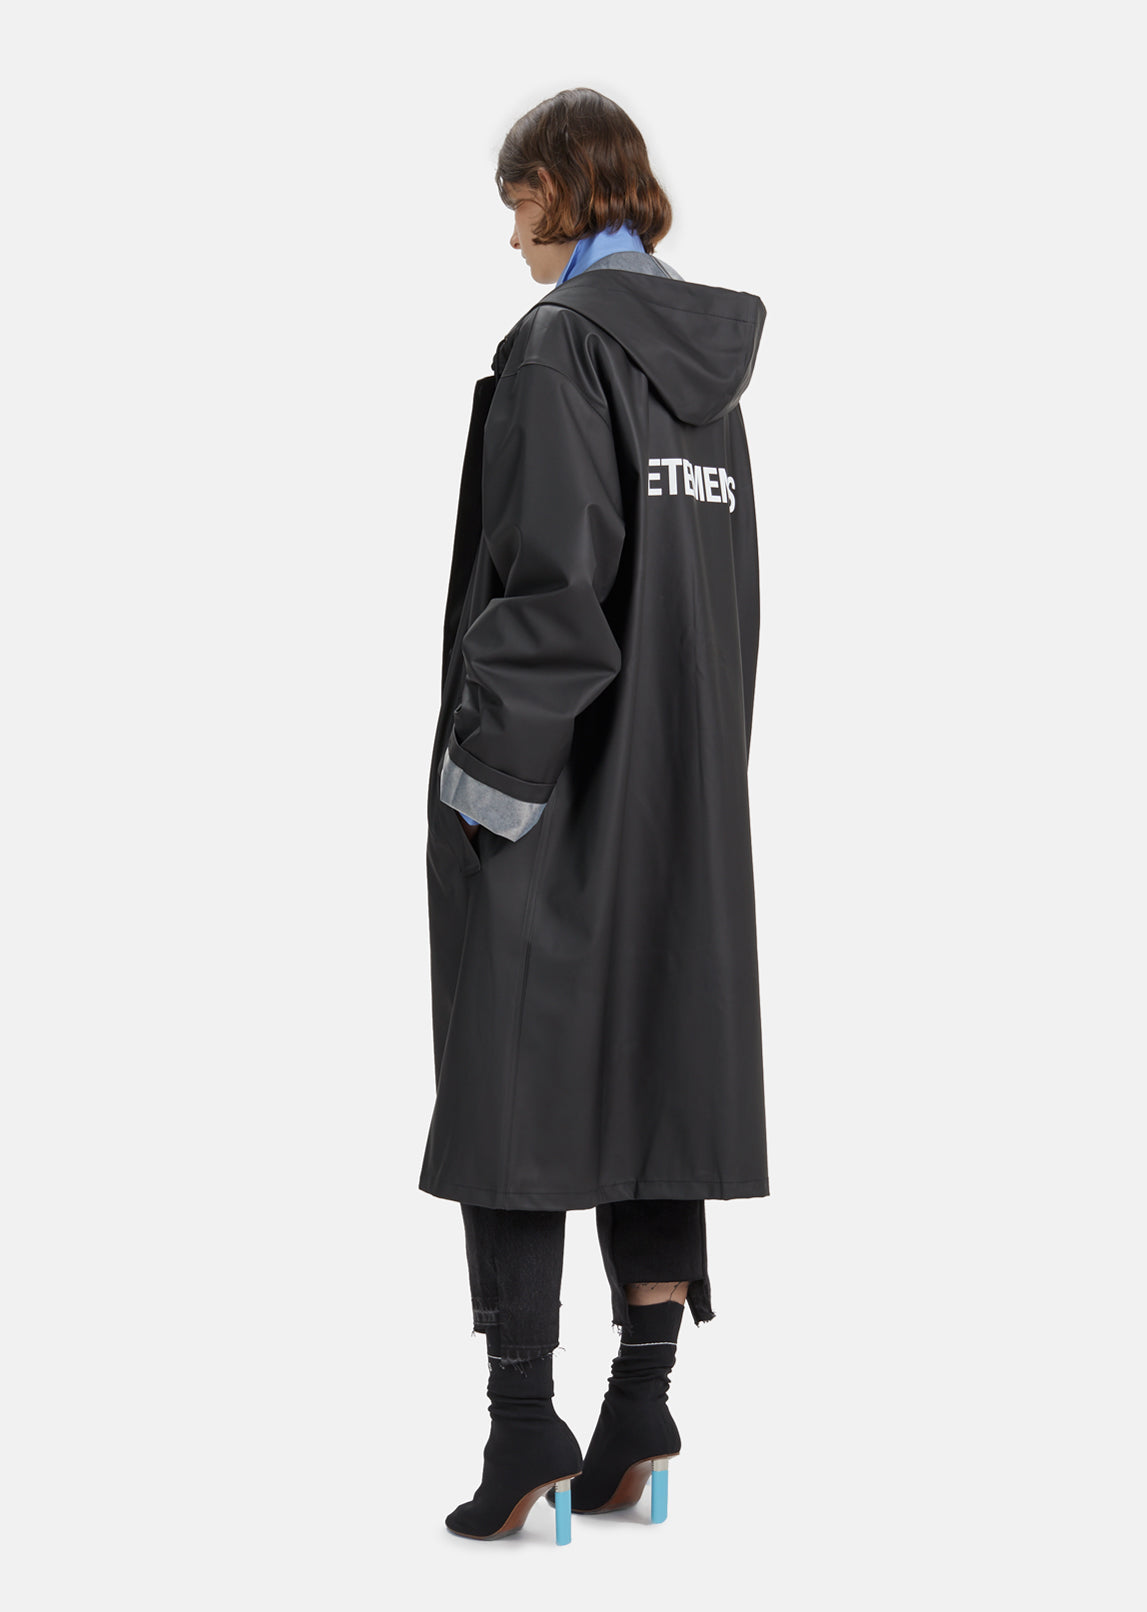 VETEMENTS rubber raincoat black 2017